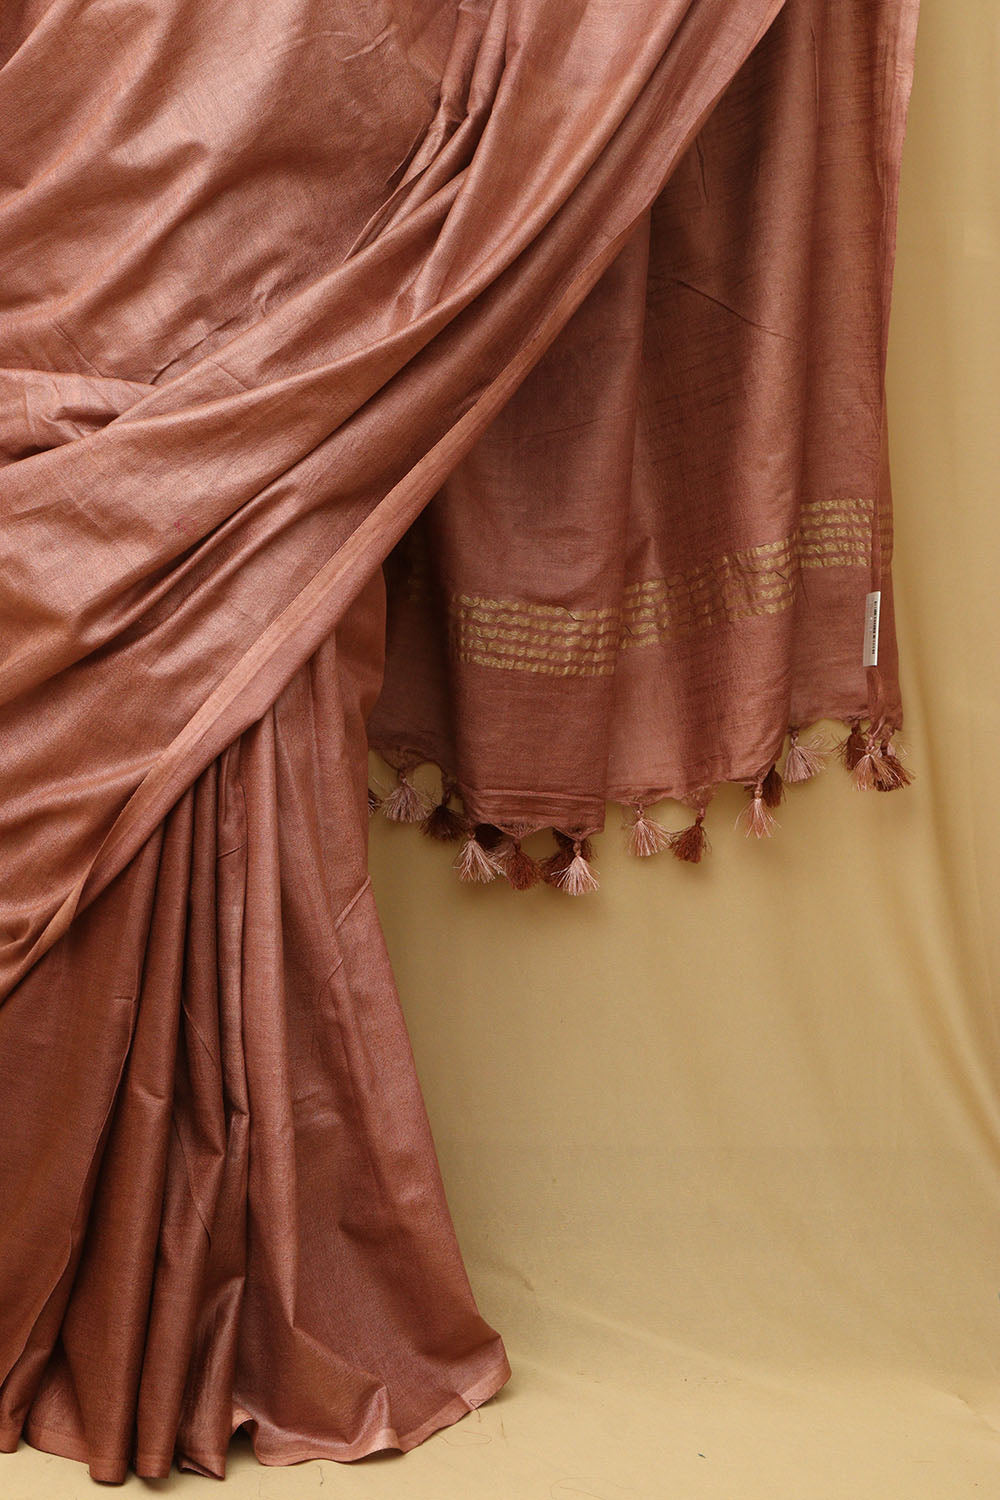 Elegant Bhagalpur Brown Linen Cotton Saree